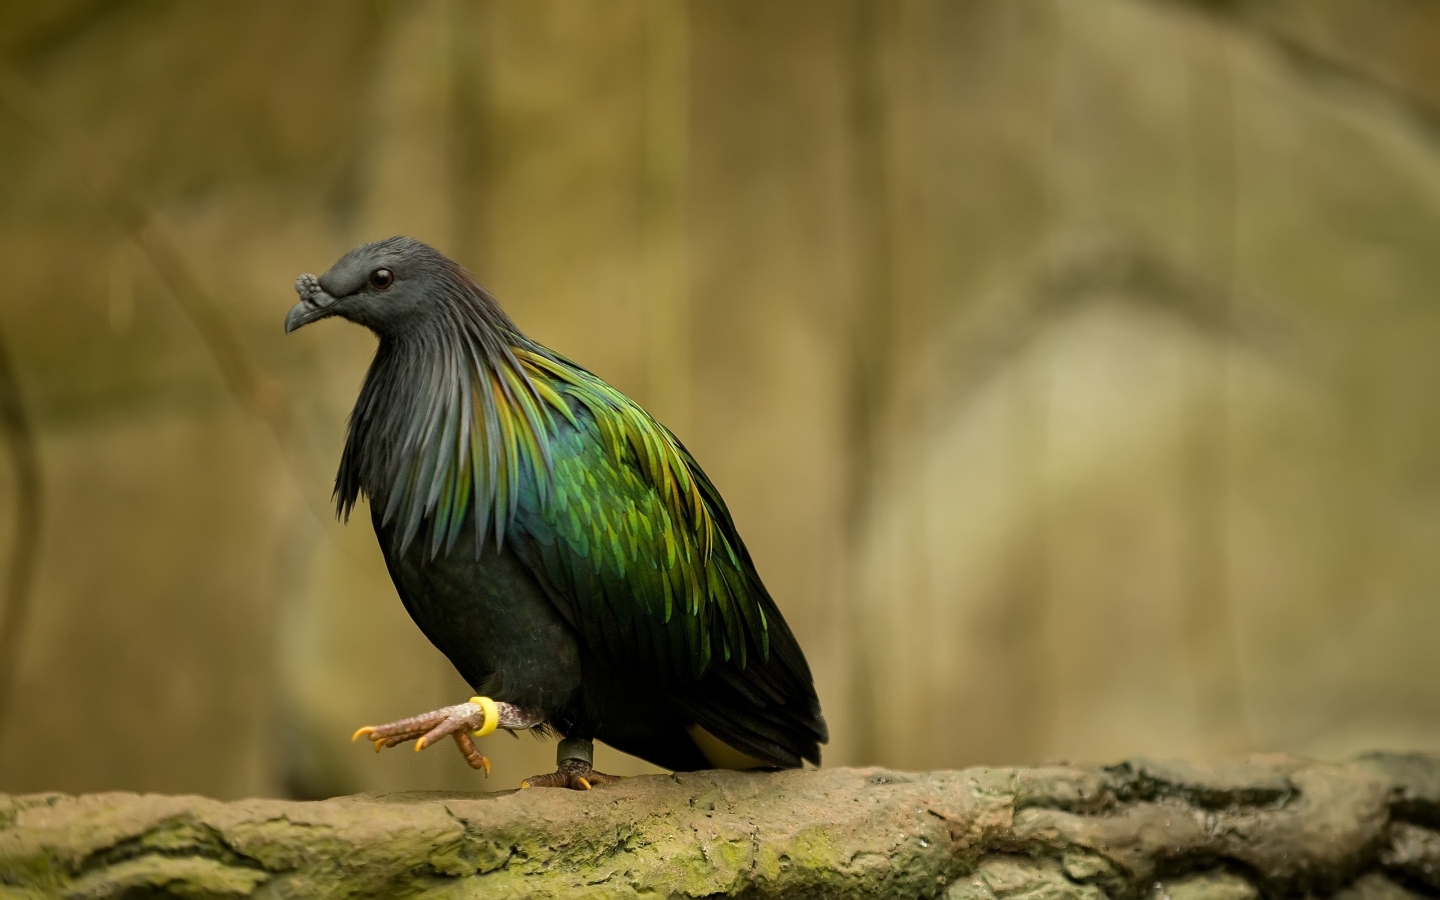 Dark green bird for 1440 x 900 widescreen resolution